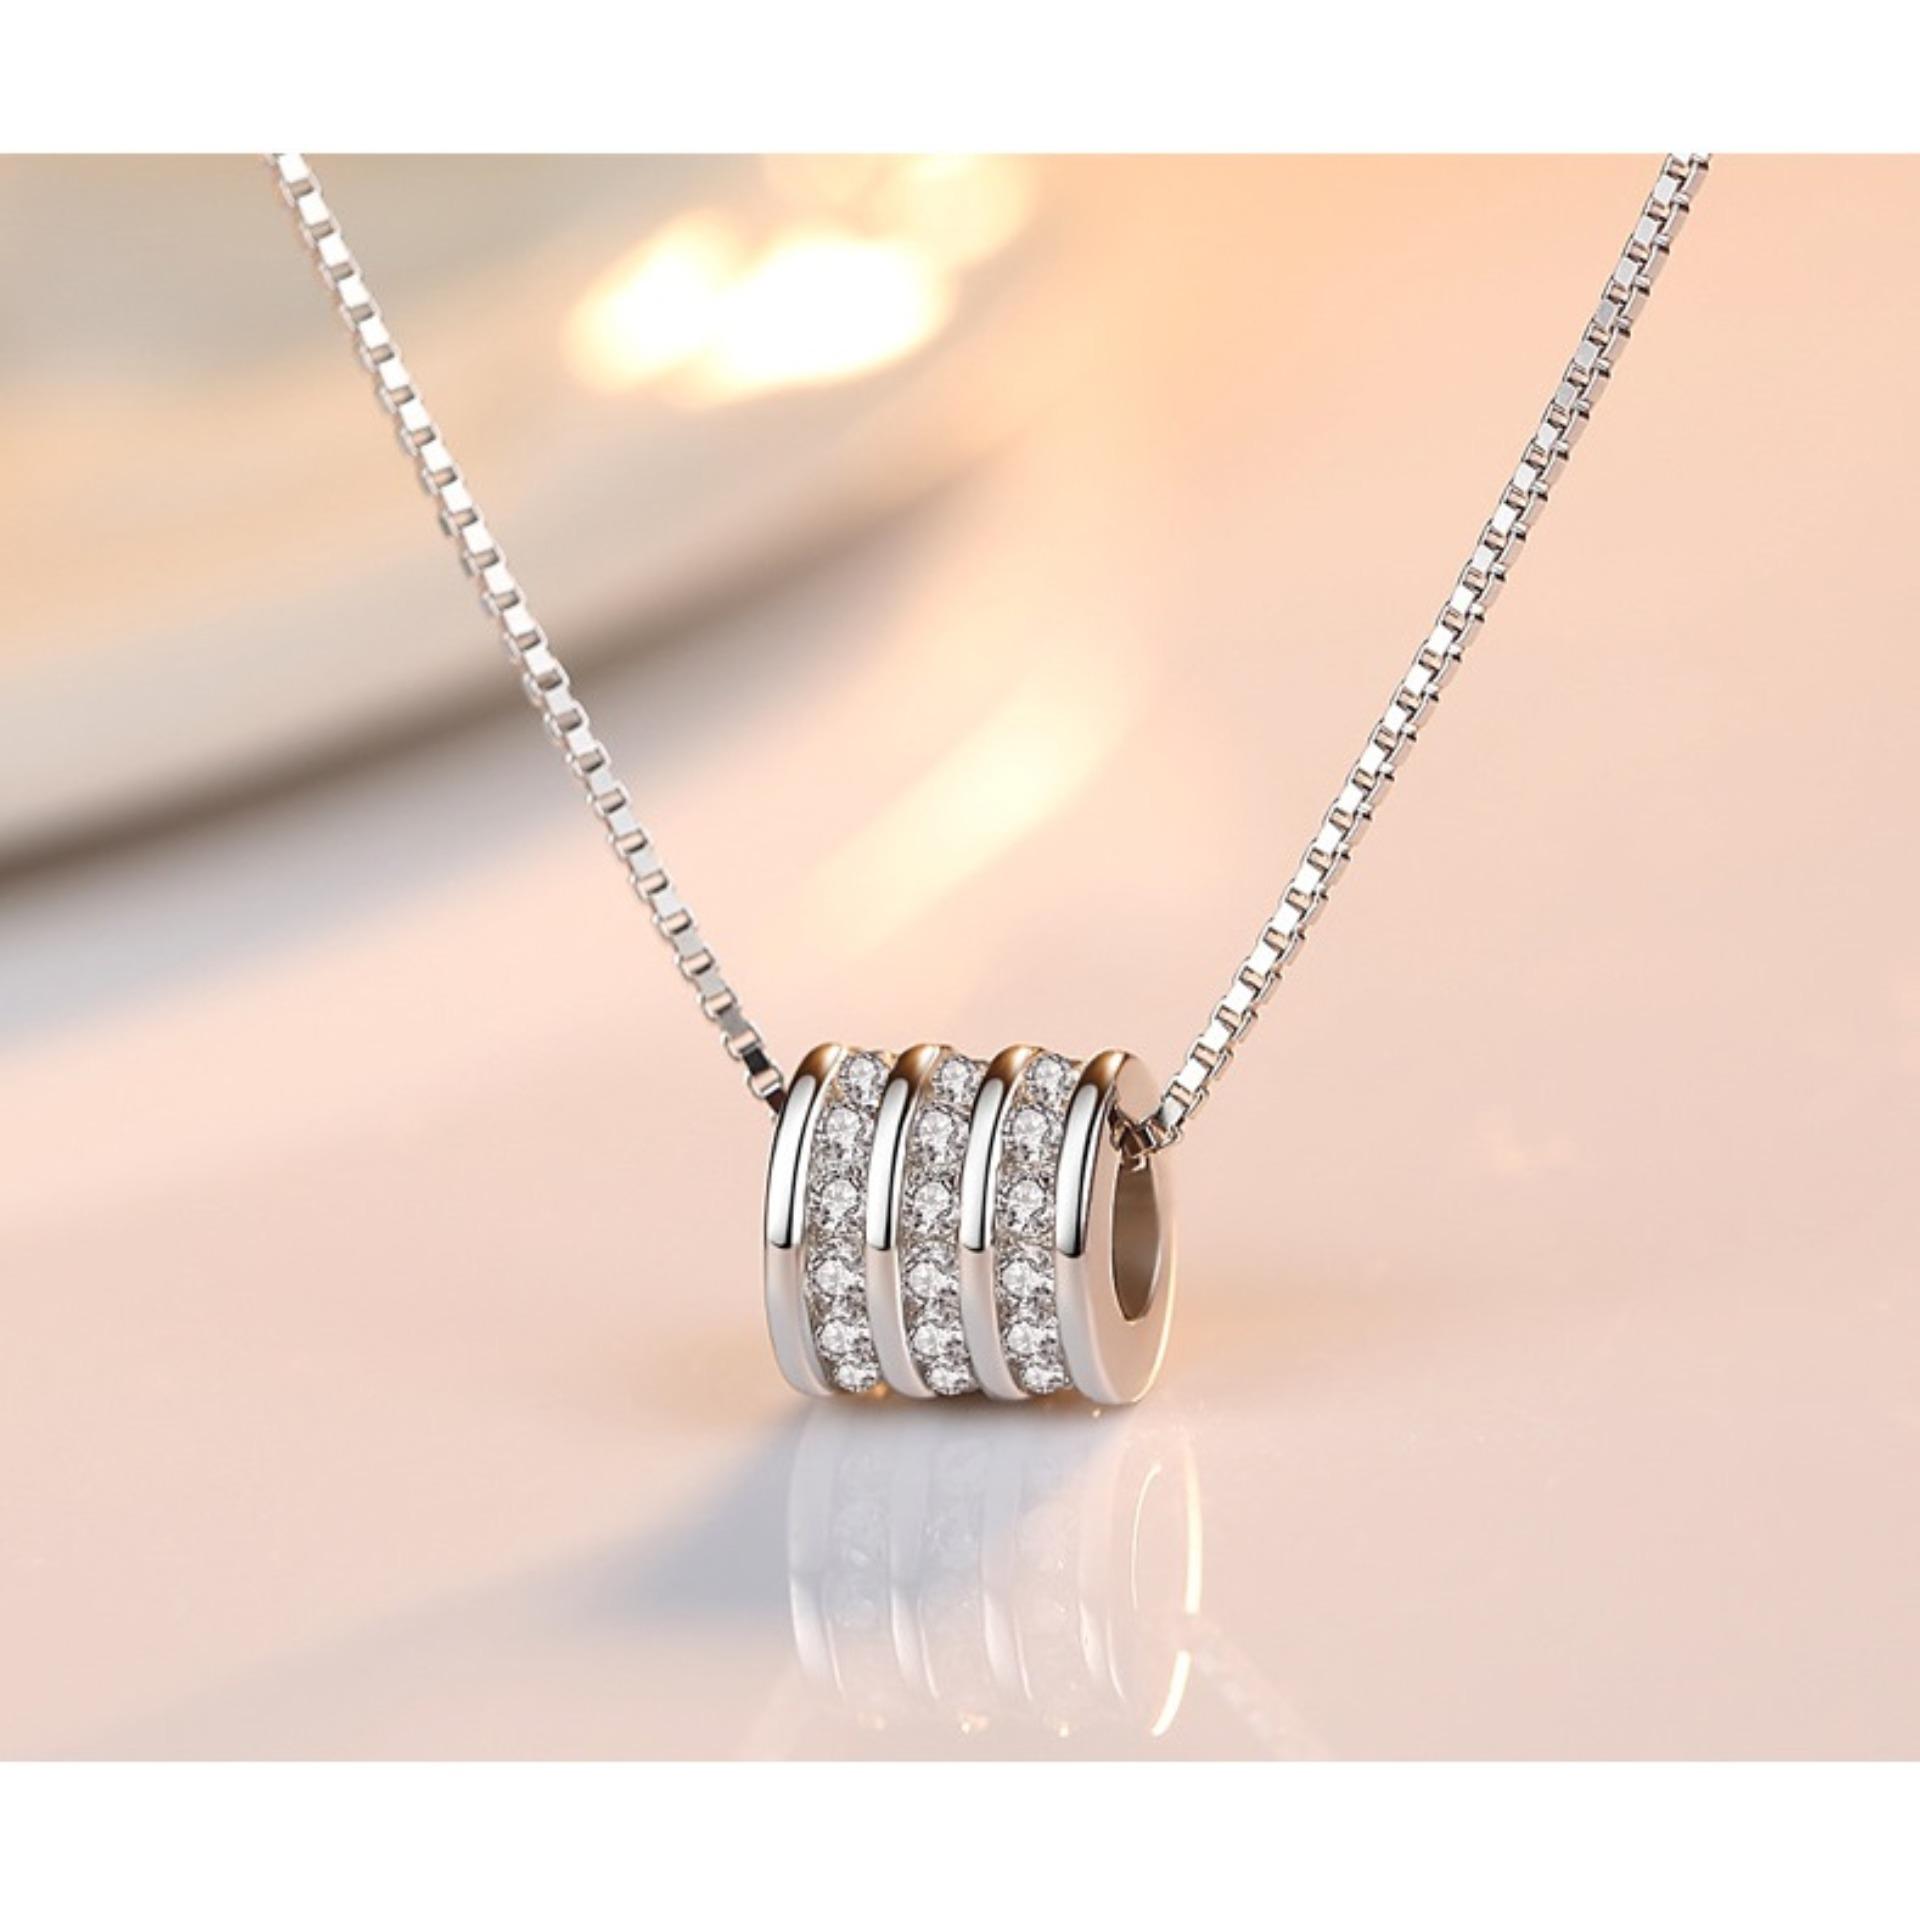 JK Silver - Dây chuyền bạc Ý 925 J051803 - phong cách Hàn Quốc nổi bật sang trọng